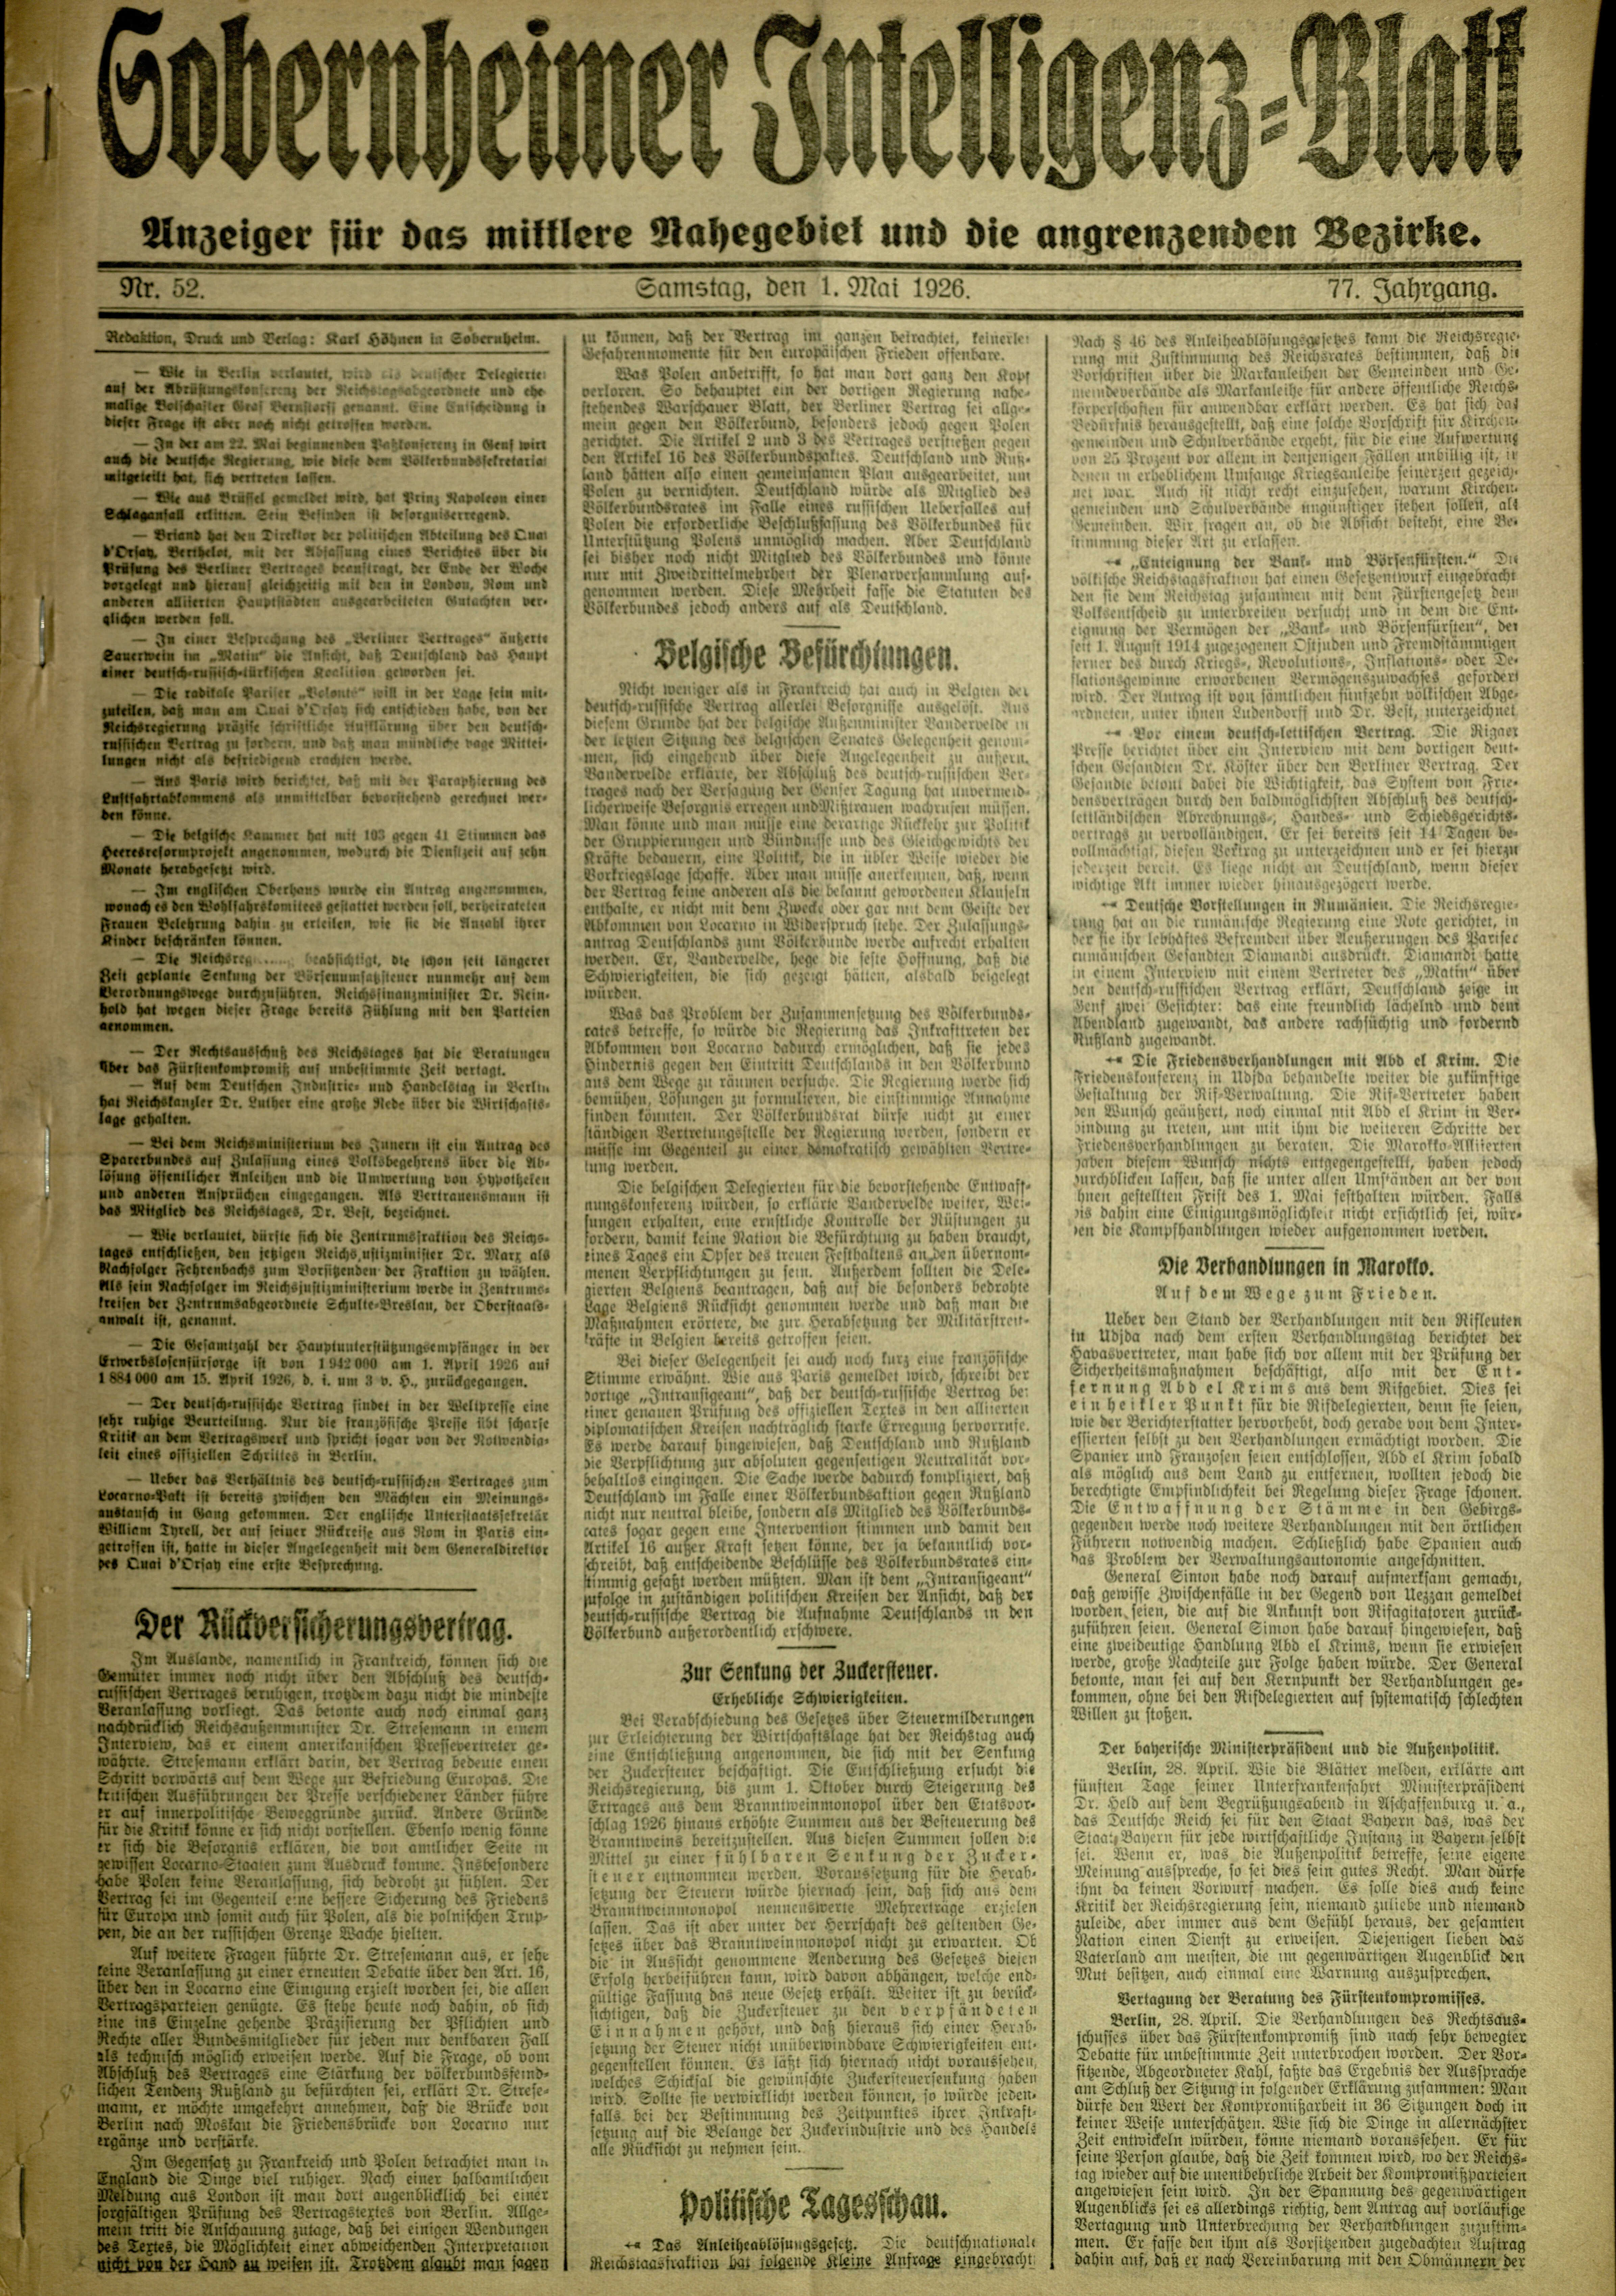 Zeitung: Sobernheimer Intelligenzblatt; Mai 1926, Jg. 73 Nr. 52 (Heimatmuseum Bad Sobernheim CC BY-NC-SA)